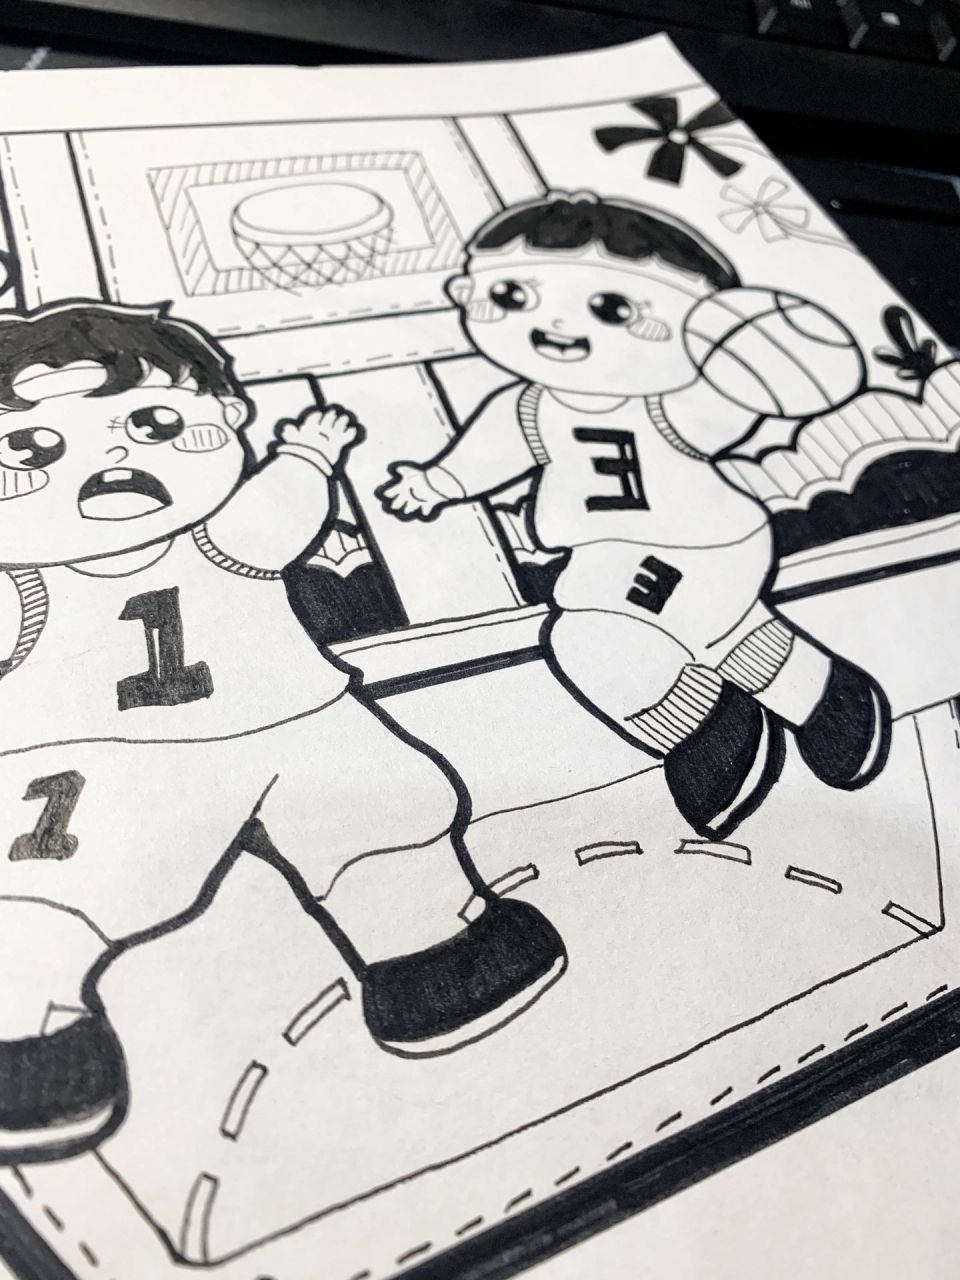 篮球比赛简笔画 男孩图片